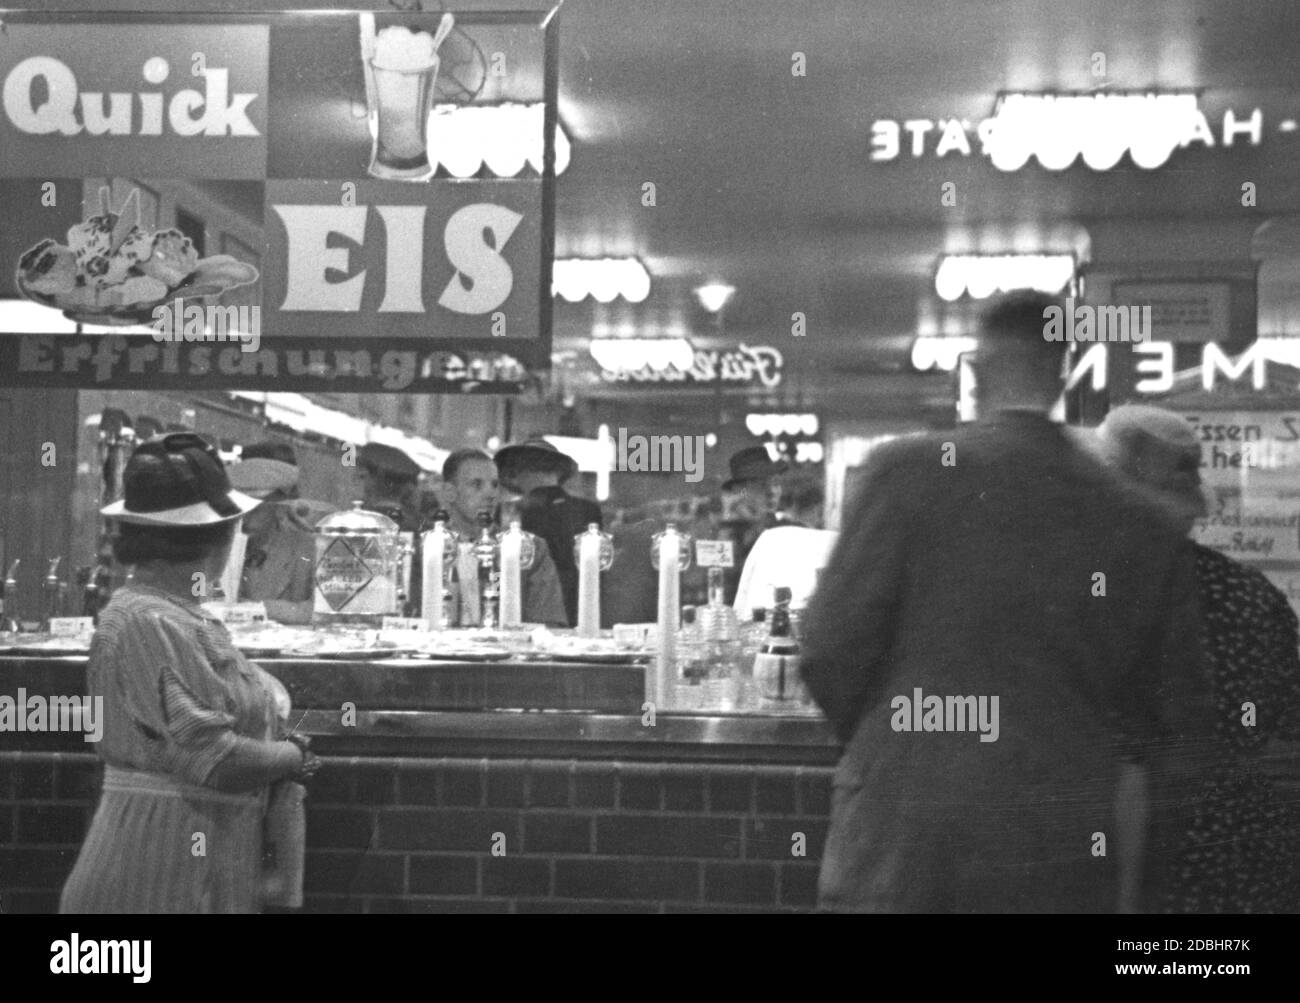 "Passers-by stand di fronte ad un bar sulla Joachimsthaler Strasse a Berlino-Charlottenburg, che pubblicizza con ''Quick EIS Erfrischungen''. La fotografia è stata scattata negli anni '30.' Foto Stock